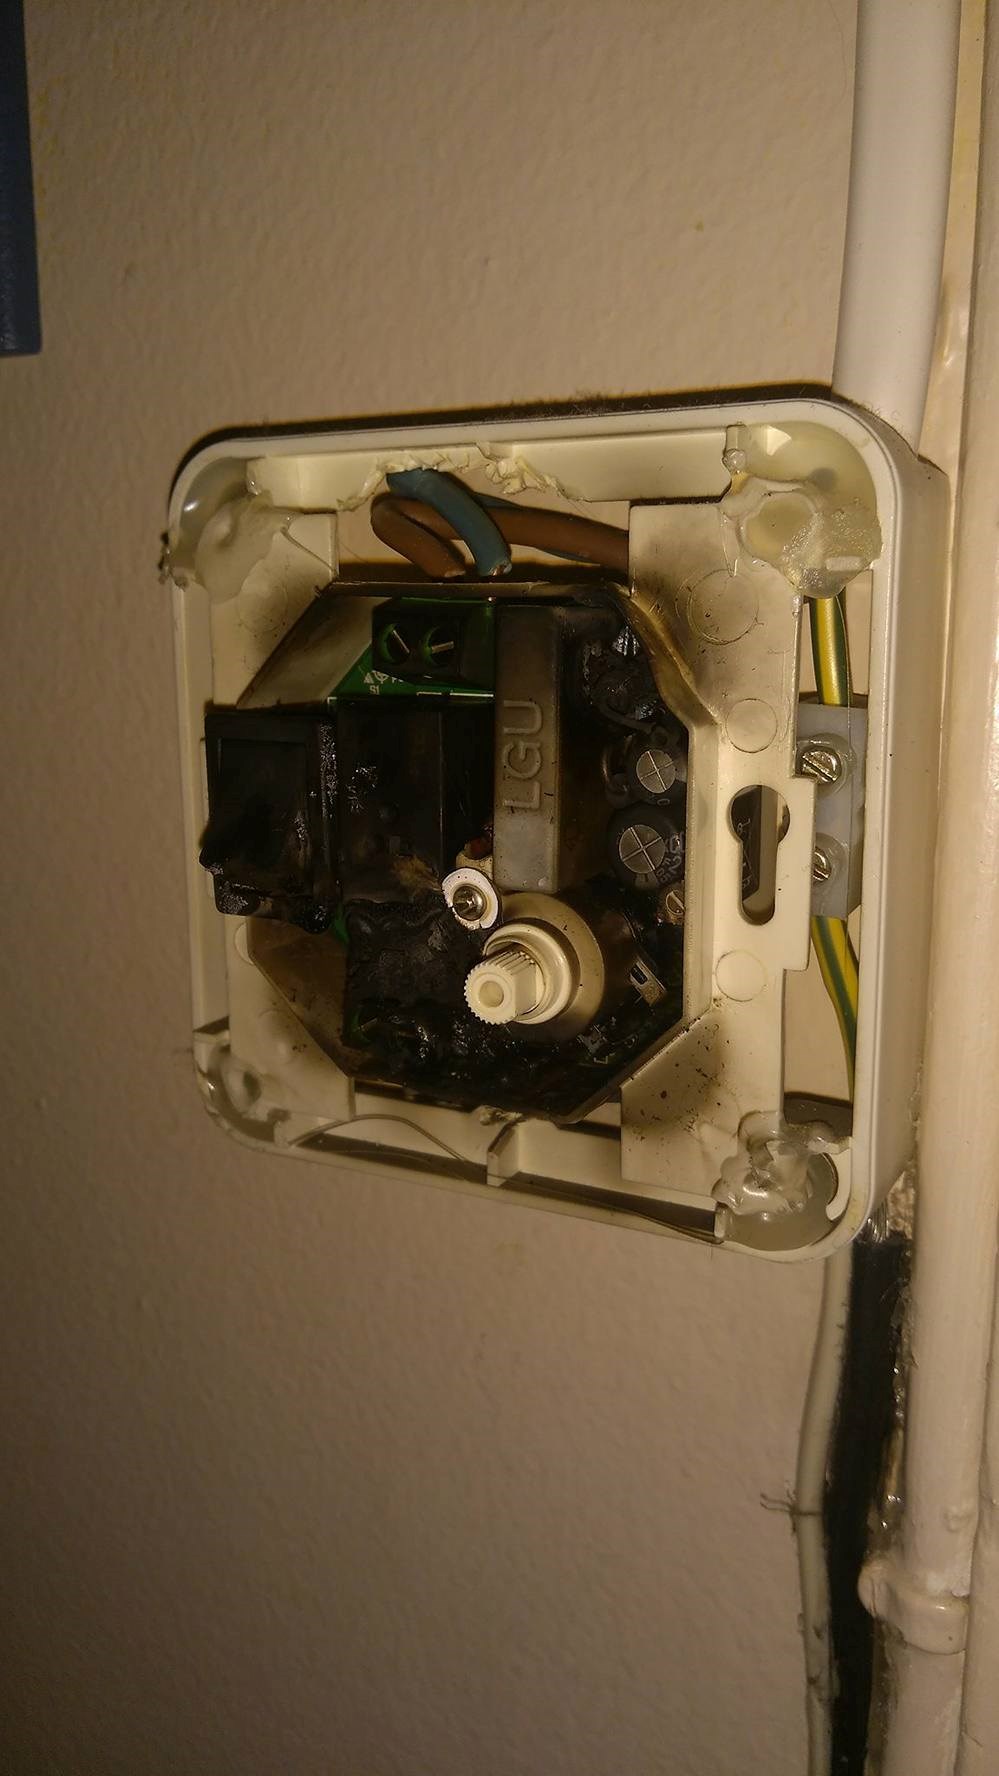 Ødelagt termostat på baderom - 23112856_10154931951235868_547288454_o.jpg - Ivar_b